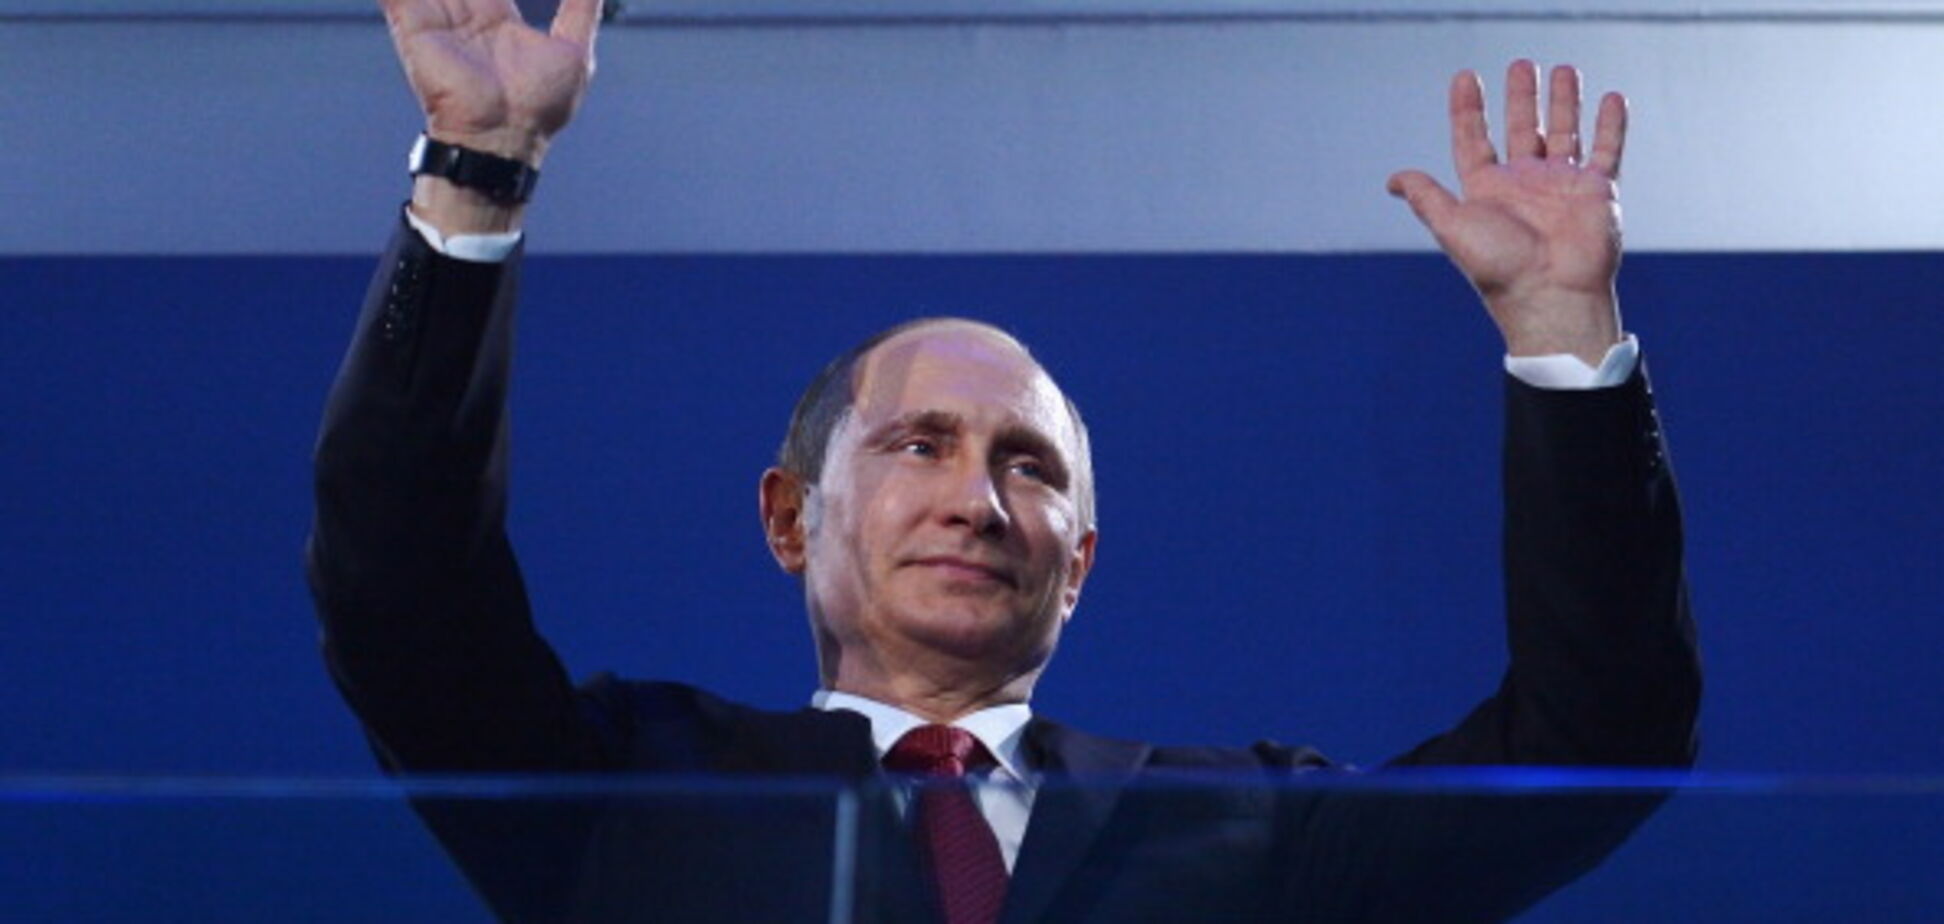 The Economist поместил на обложку Путина в образе царя